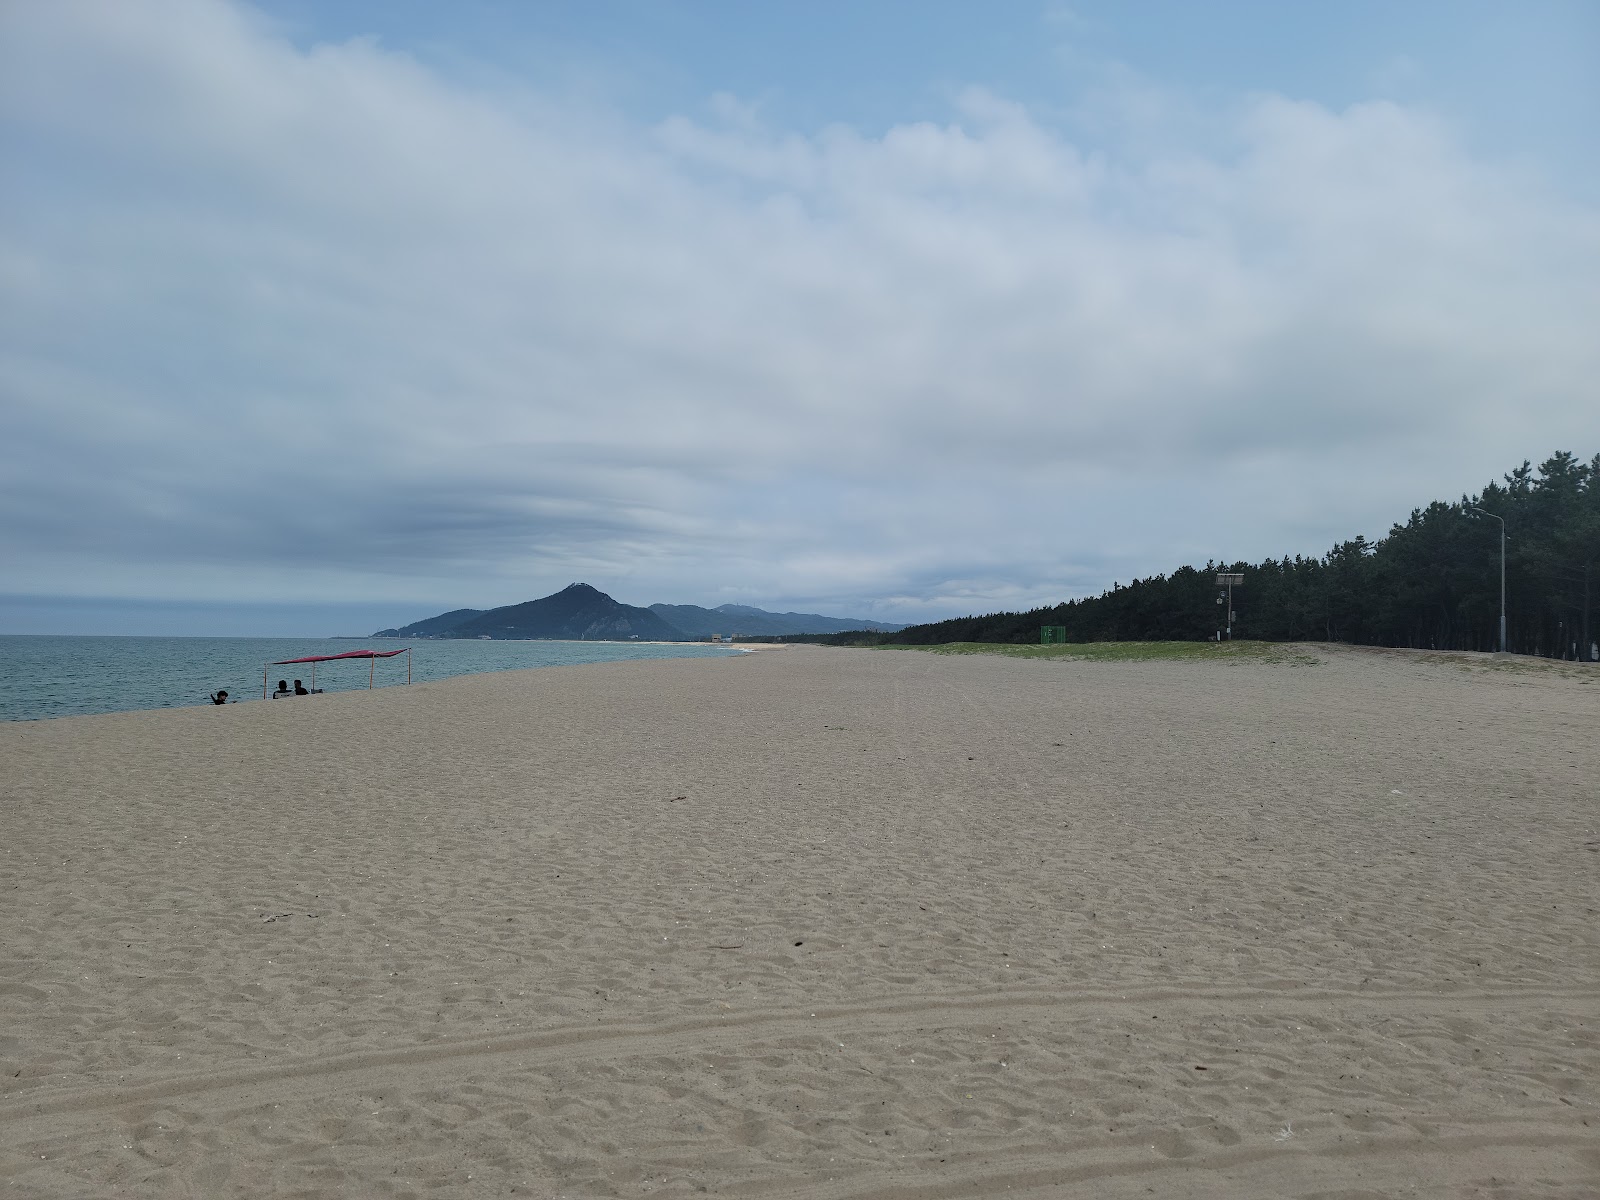 Zdjęcie Yeongri Beach - popularne miejsce wśród znawców relaksu